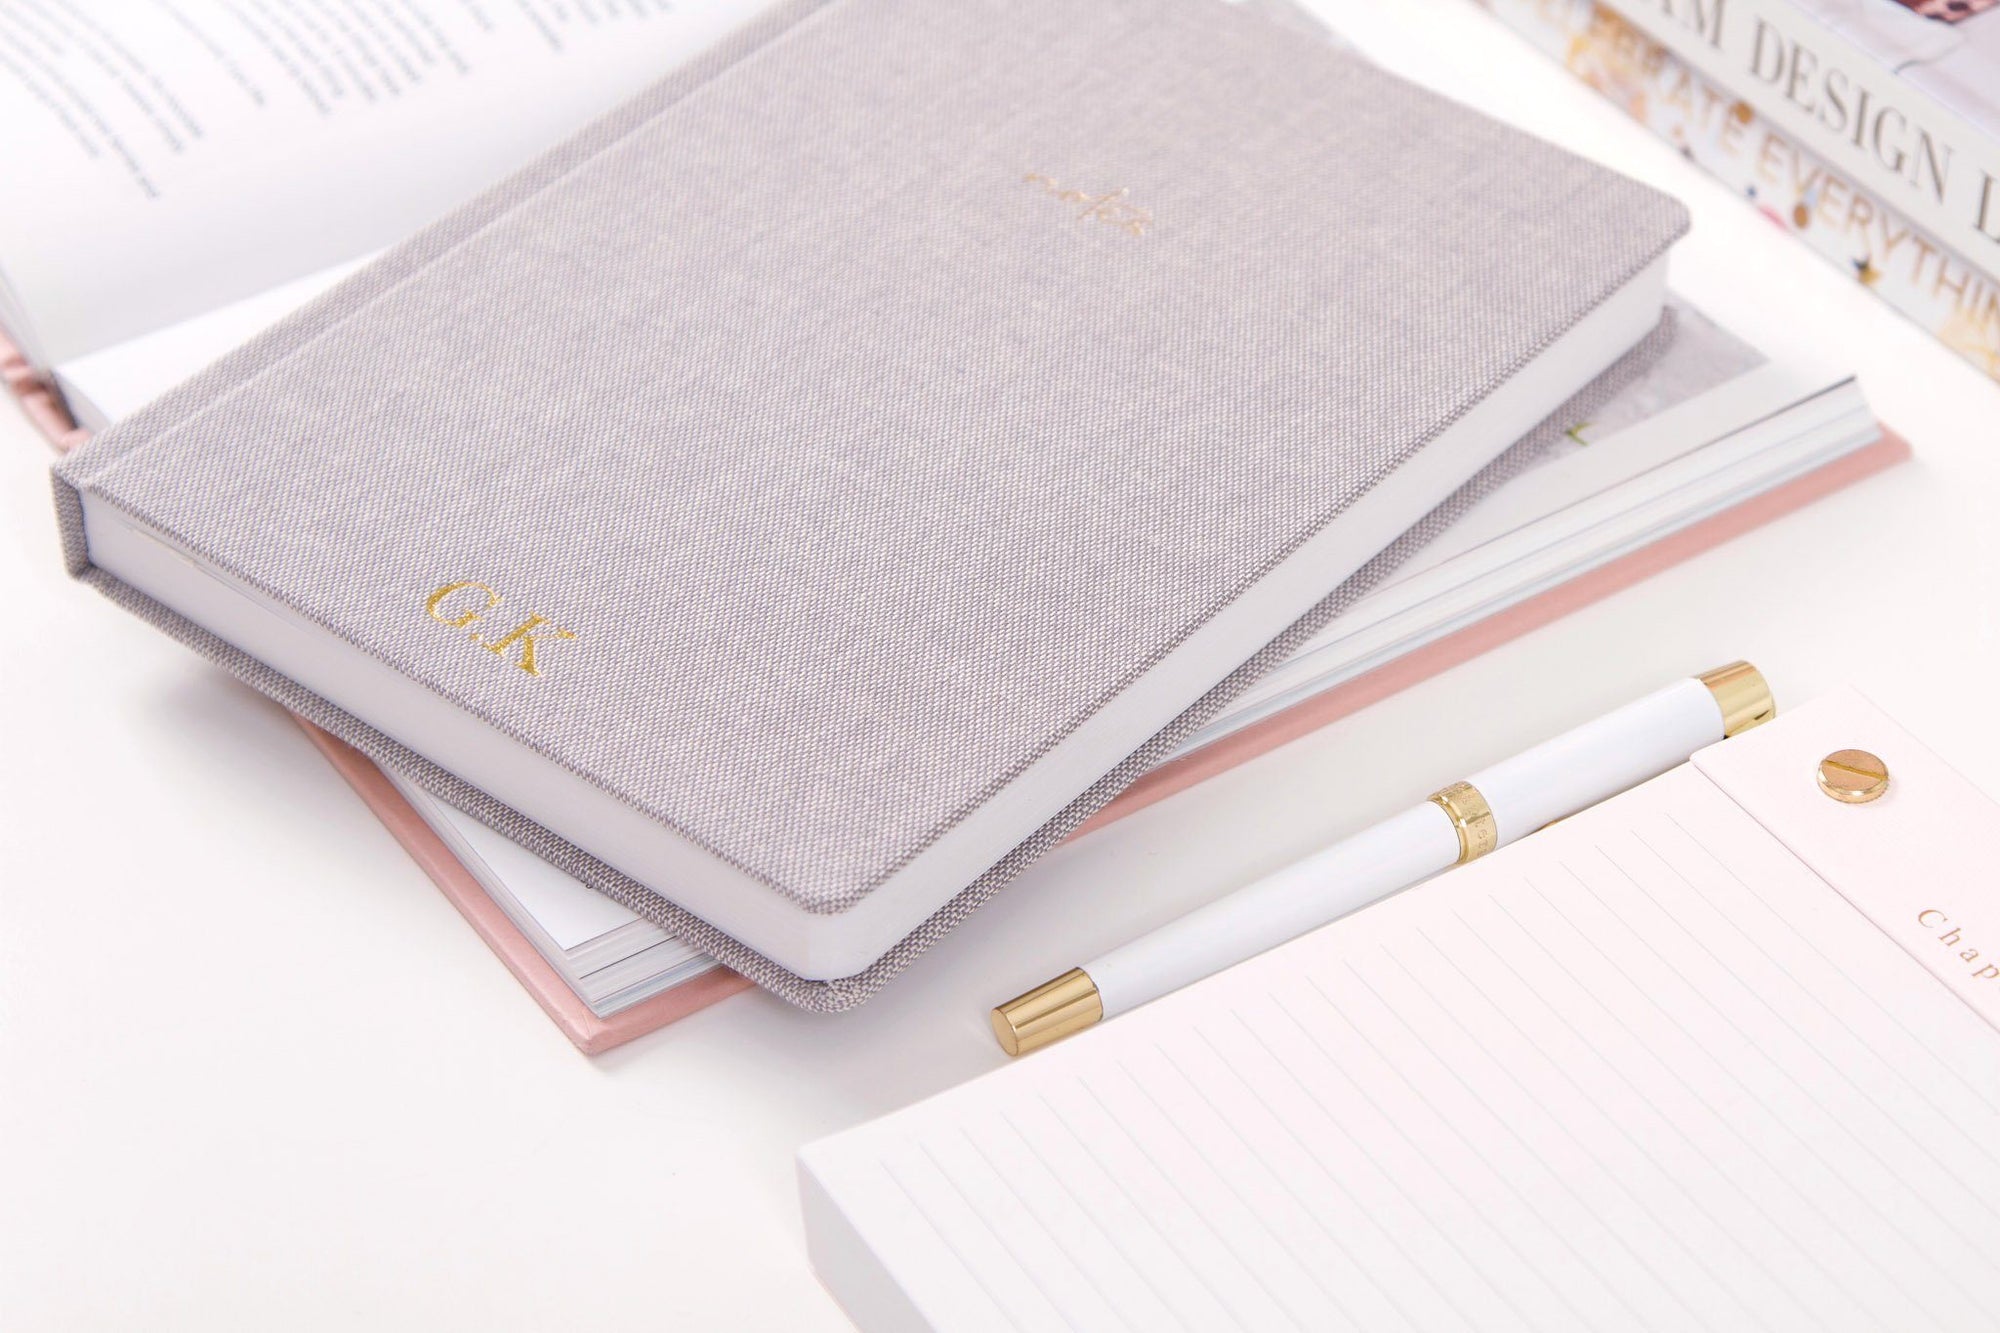 Linen Notebook, Gray